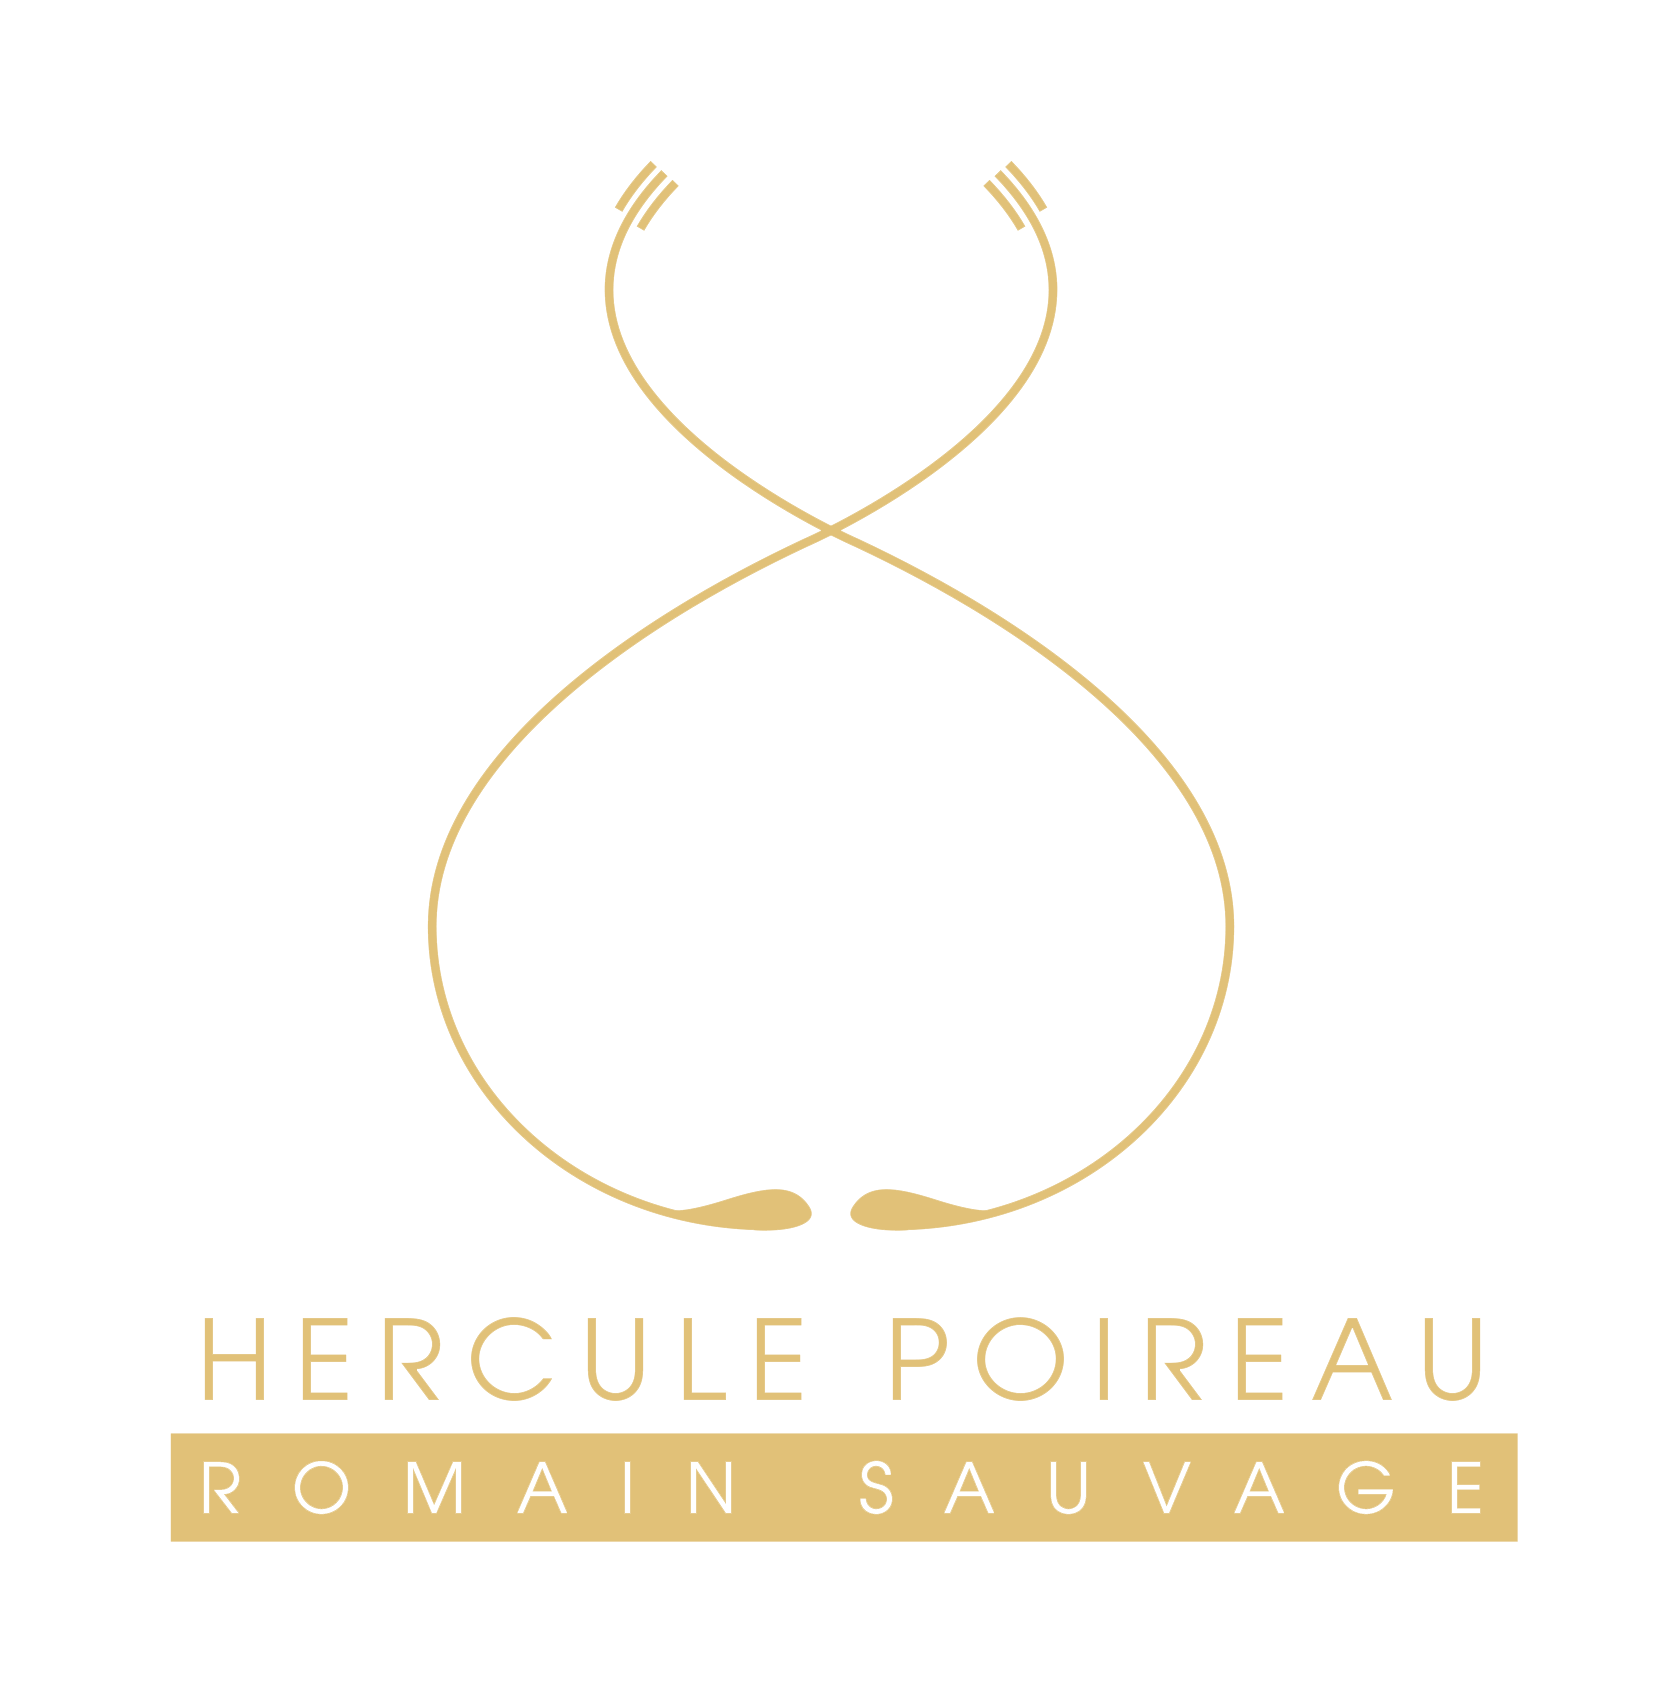 Logo Hercule poireau